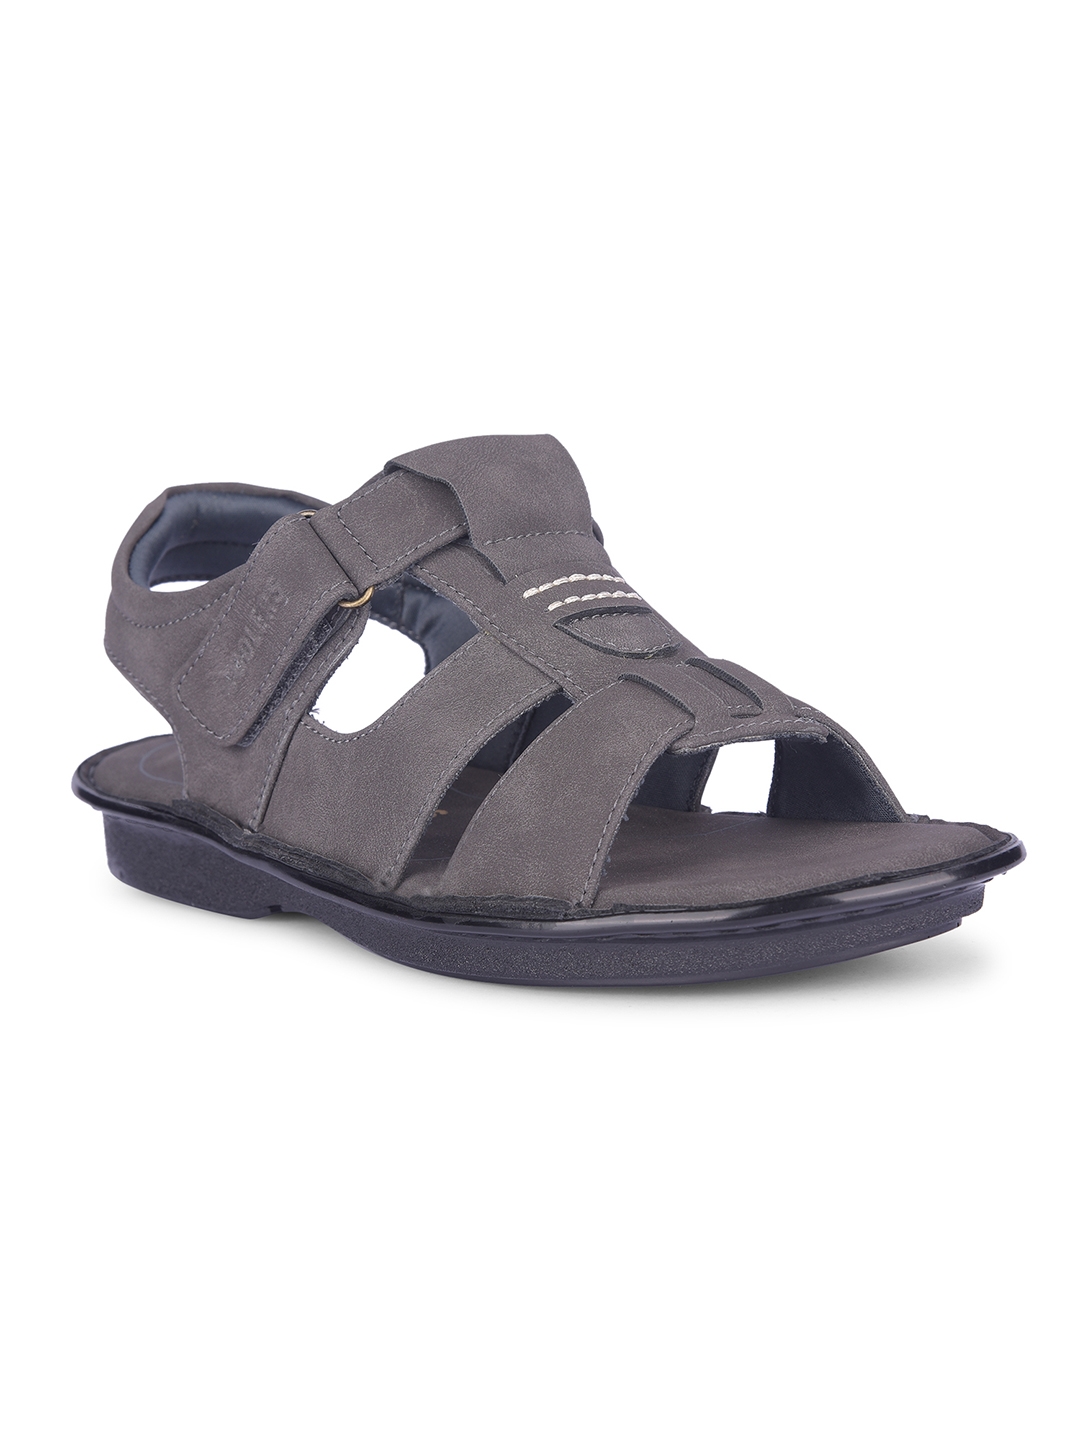 Men's Coolers Grey Solid Sandal